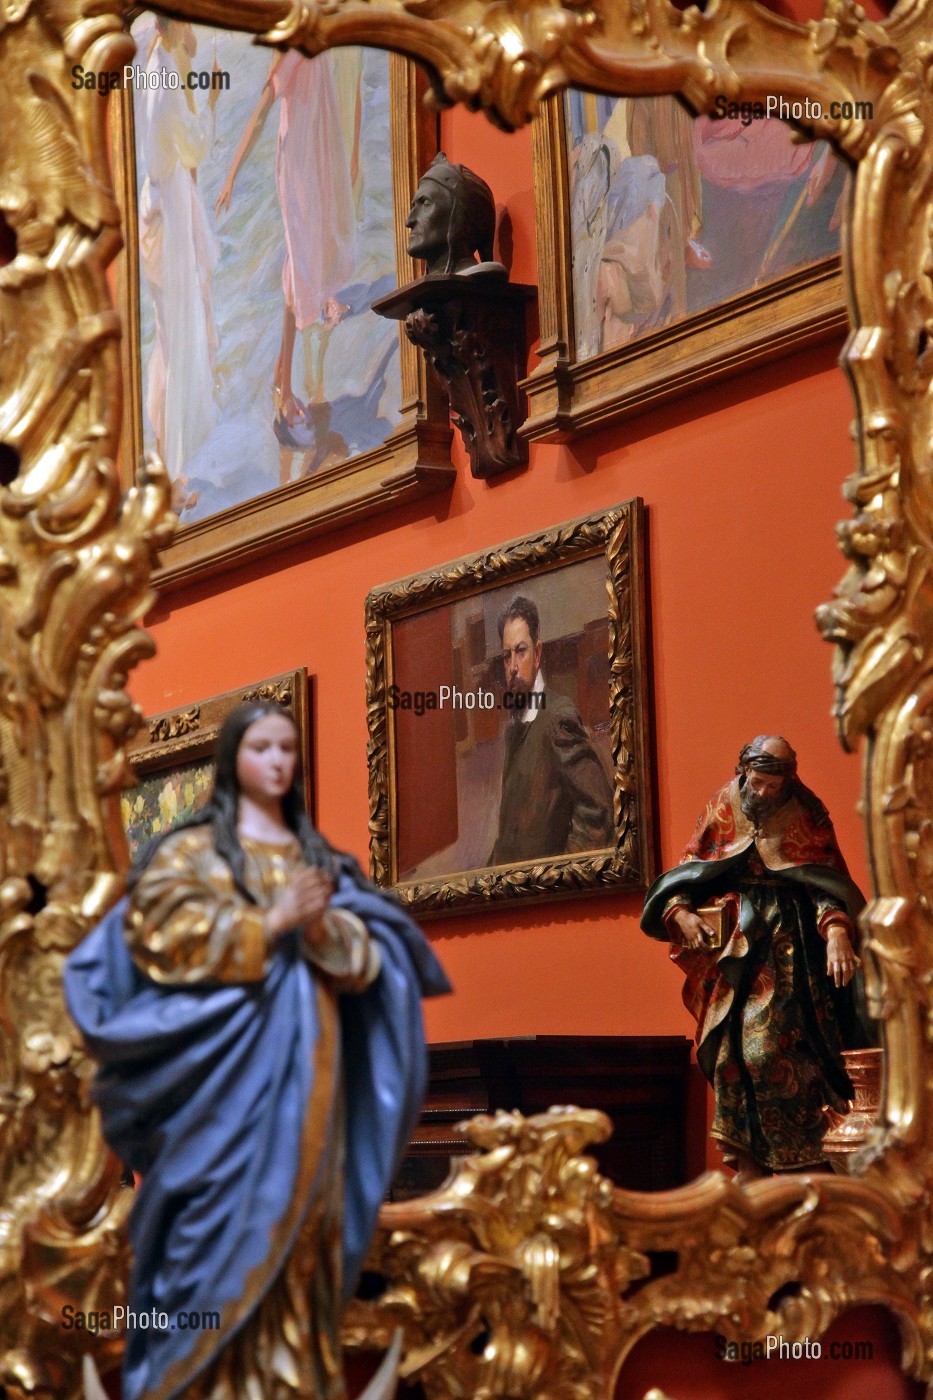 PEINTURE ET STATUE DANS LE MIROIR DE LA MAISON DU PEINTRE MUSEE JOAQUIN SOROLLA, MADRID, ESPAGNE 